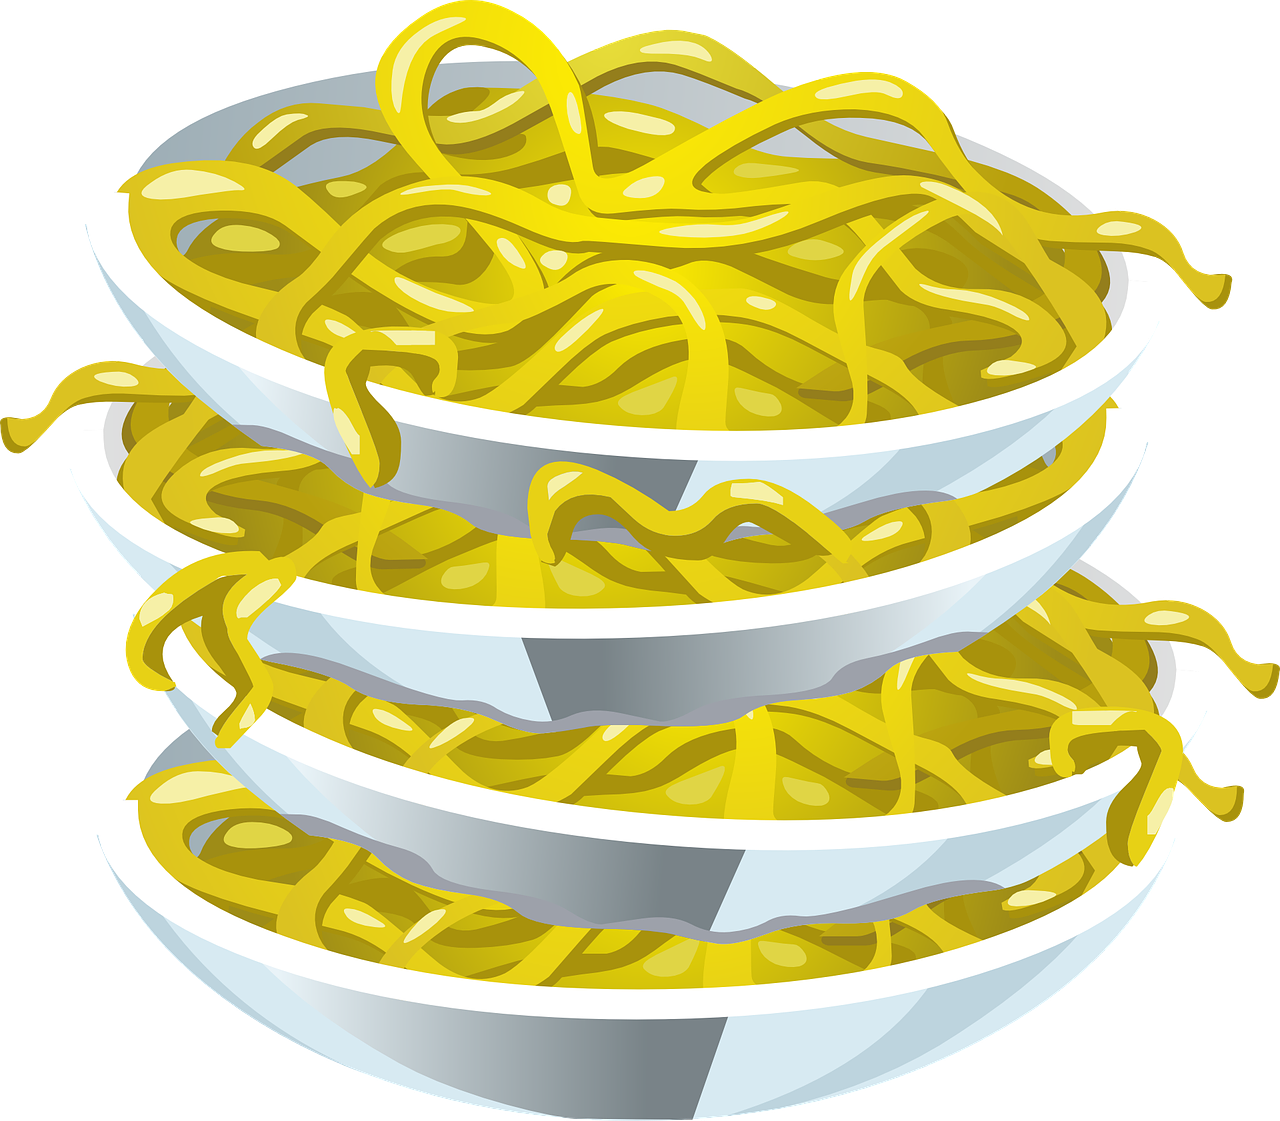 spaghetti noodles pasta free photo